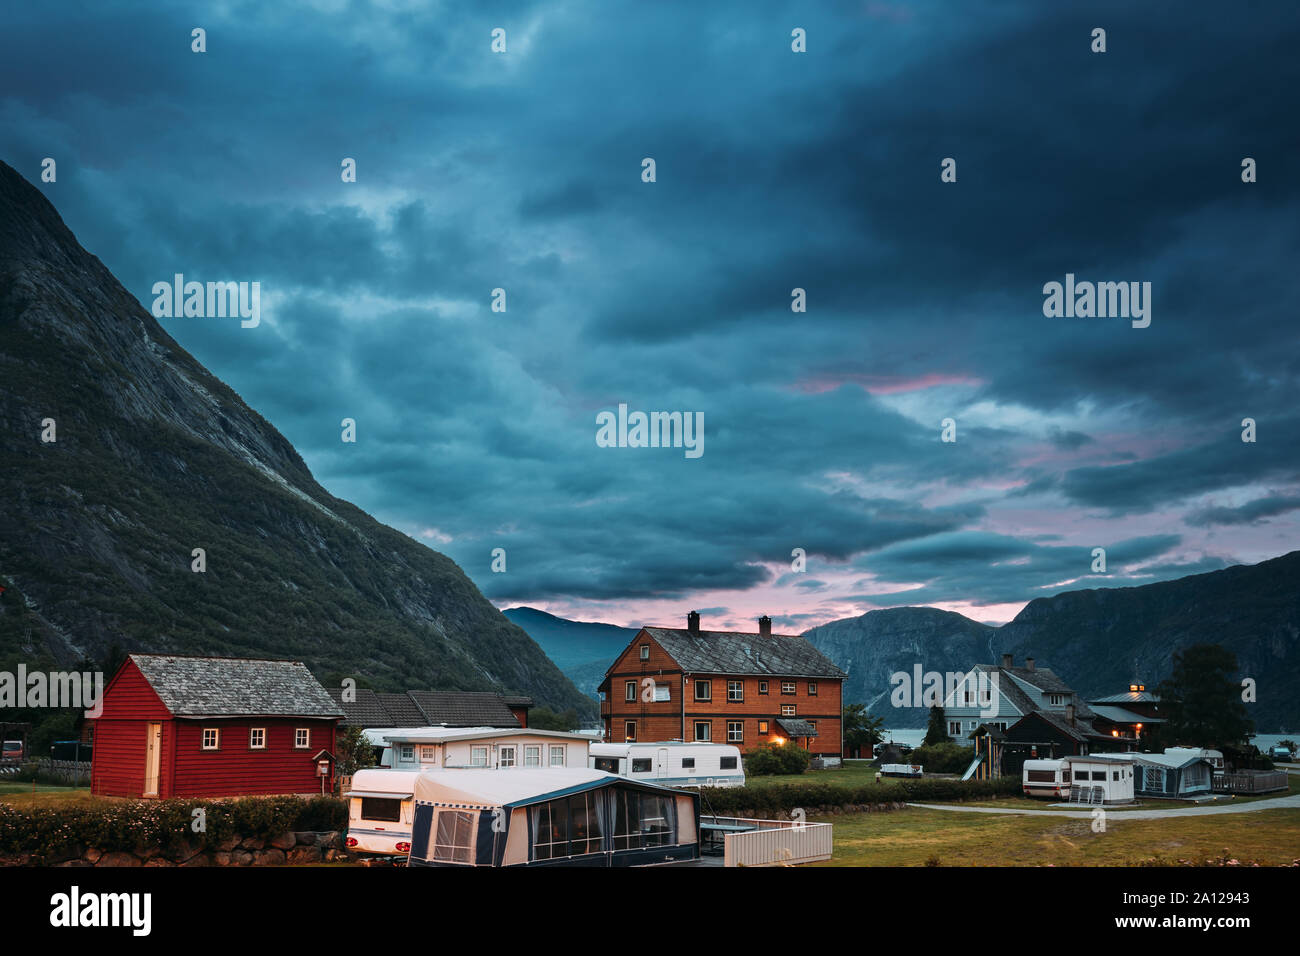 A Eidfjord, Hordaland County, Hardanger Regione, Hardangerfjord, Norvegia. Caravan Motorhome auto parcheggio nei pressi di vecchie case in legno nella campagna norvegese. Foto Stock